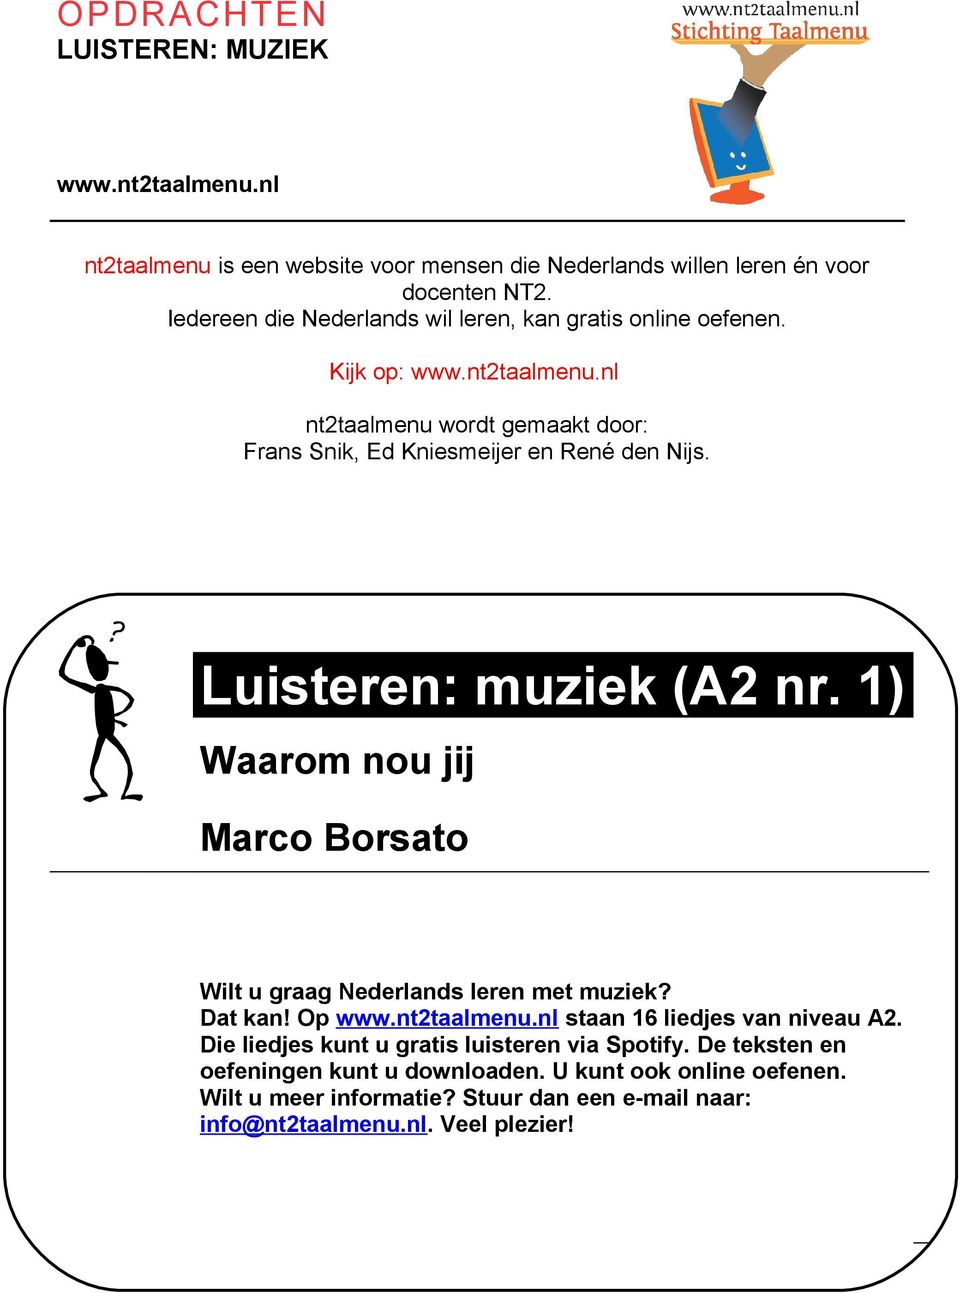 Wat leer je? Luisteren: muziek (A2 nr. 1) Waarom nou jij Marco Borsato Wilt u graag Nederlands leren met muziek? Dat kan! Op www.nt2taalmenu.